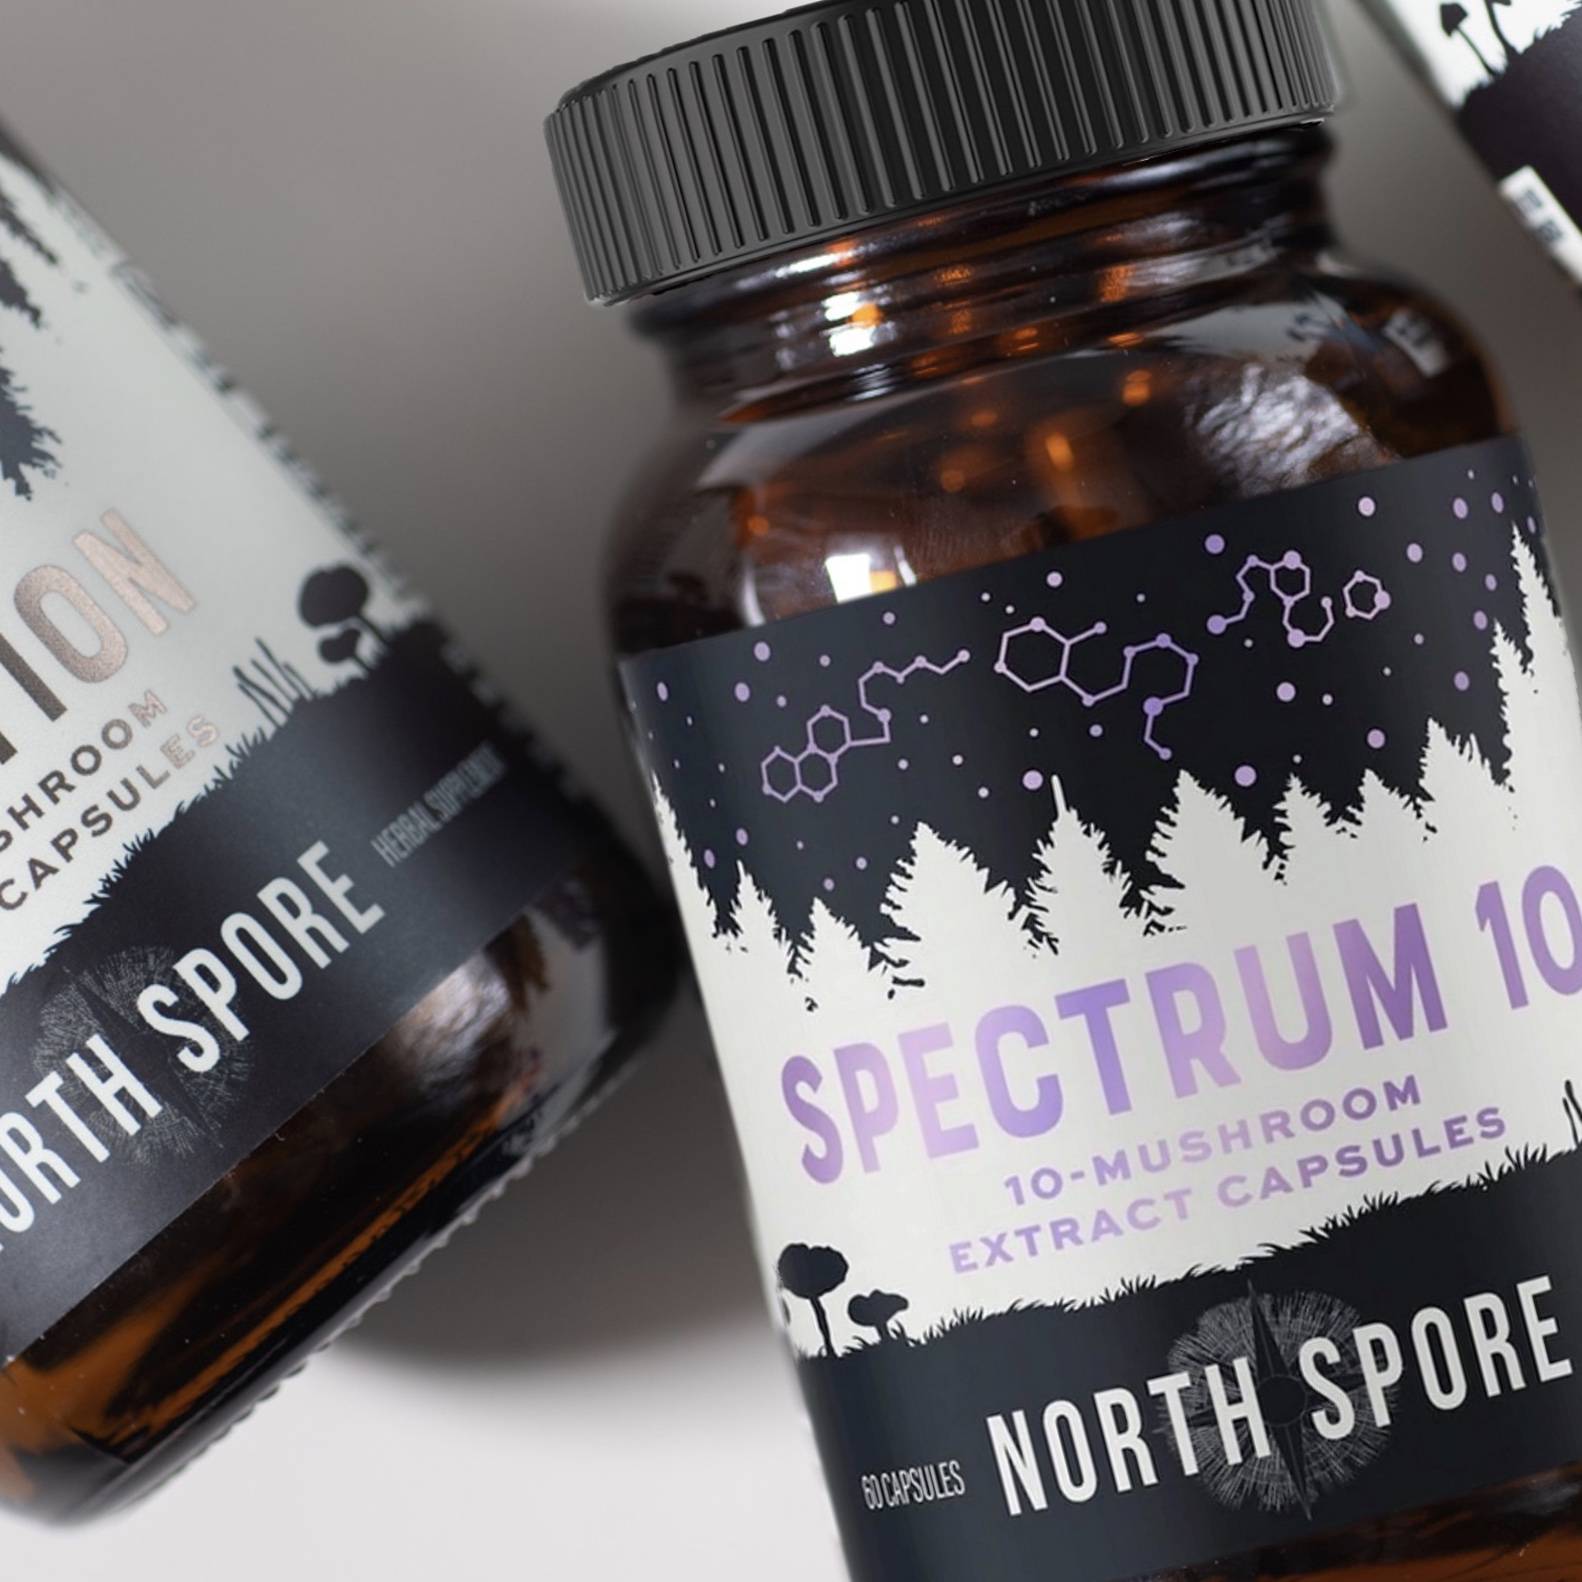 North Spore 'Spectrum 10' Organic Multi-Mushroom Extract Capsules - Multiverse